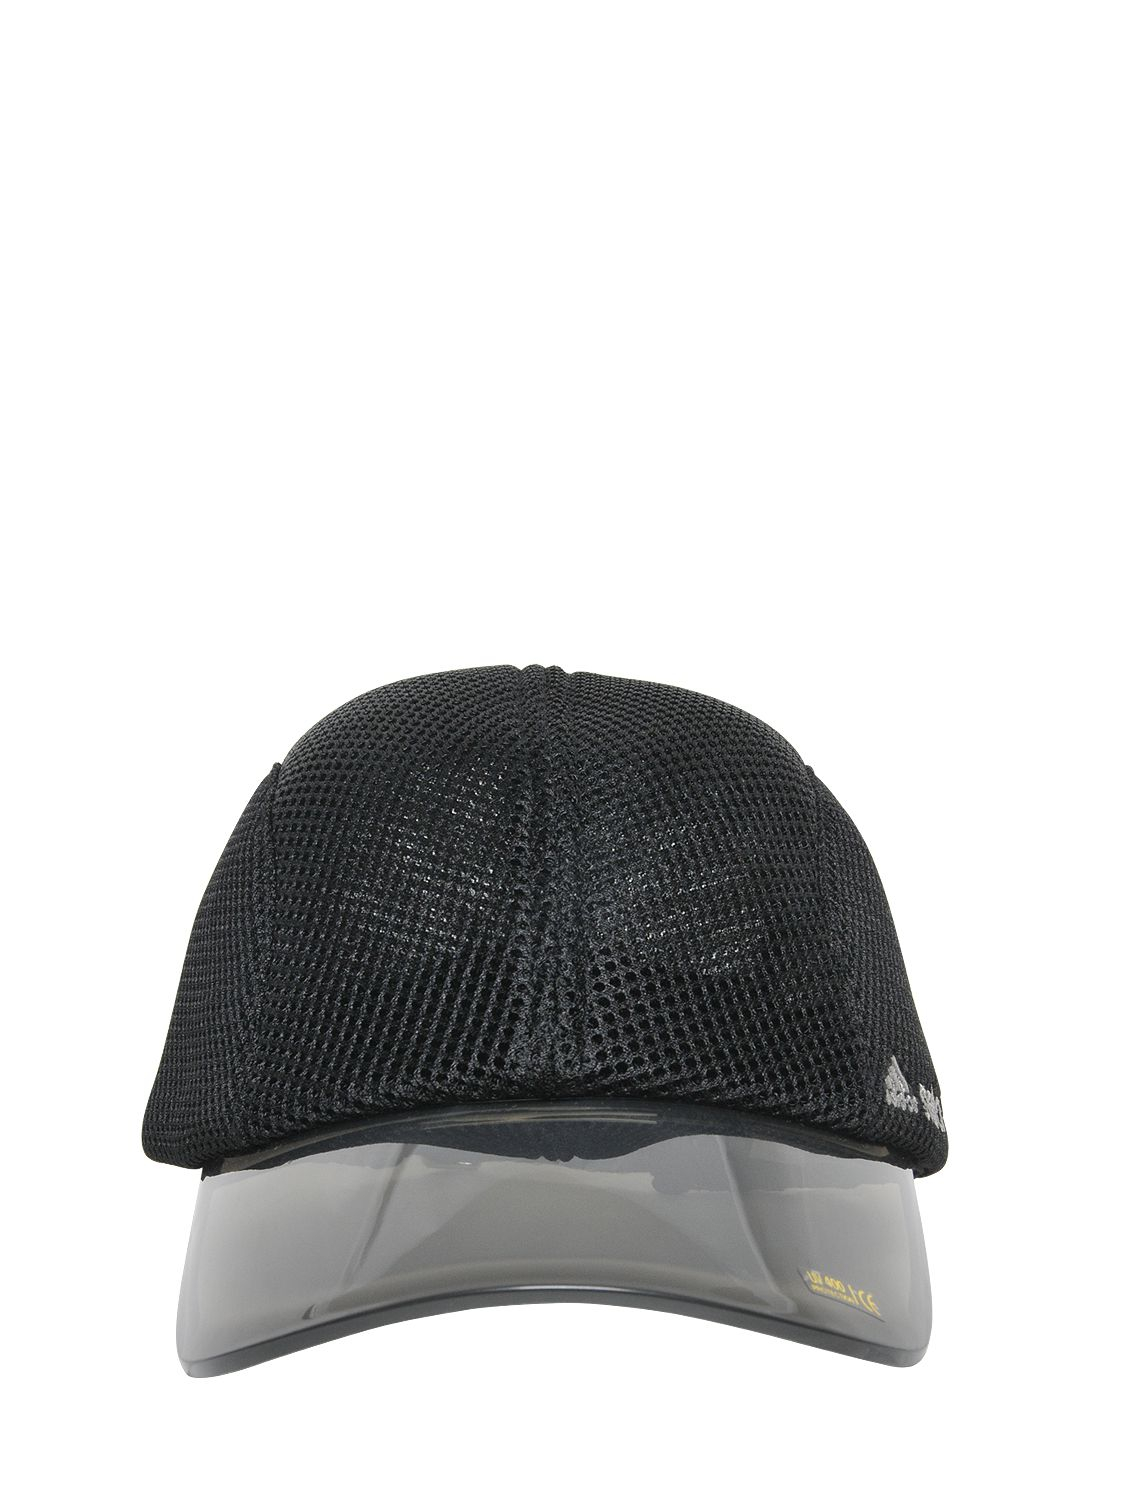 adidas By Stella McCartney Mesh & Pvc Running Hat in Black | Lyst